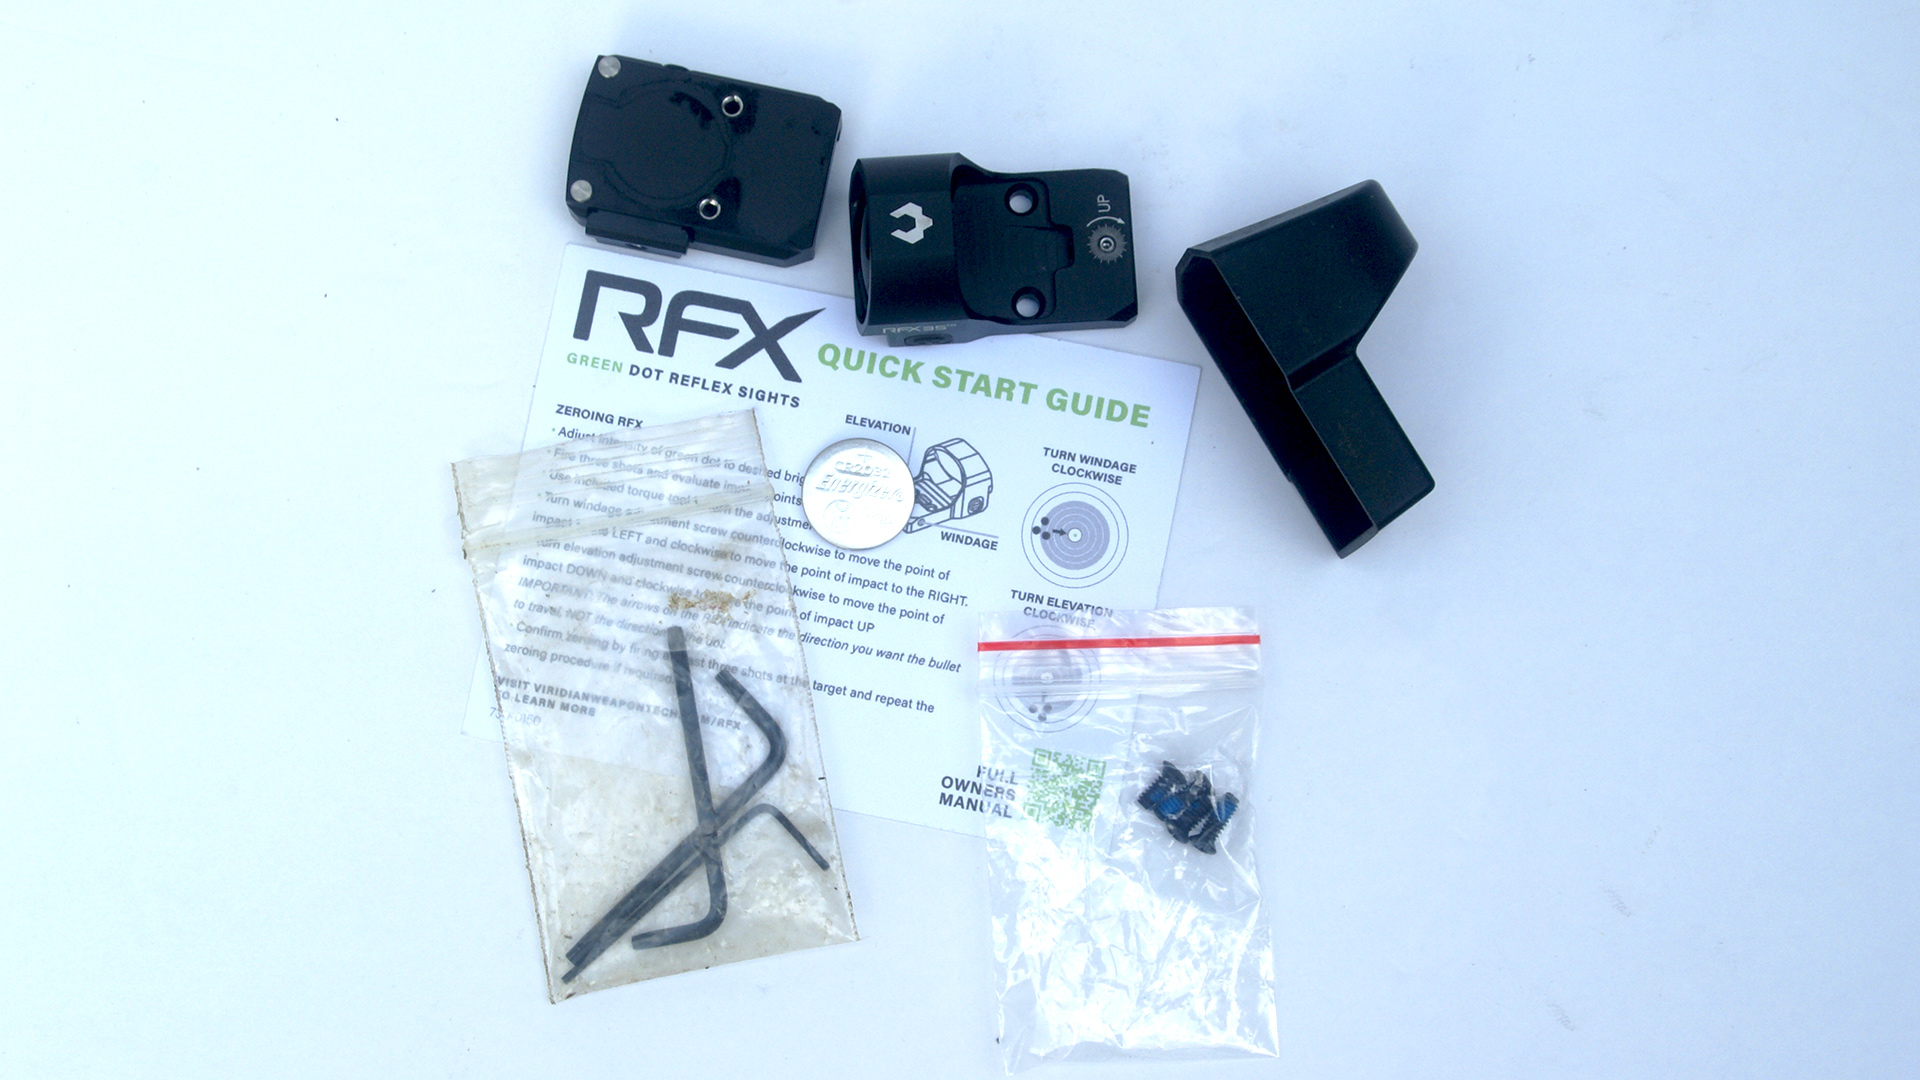 RFX35 optic package